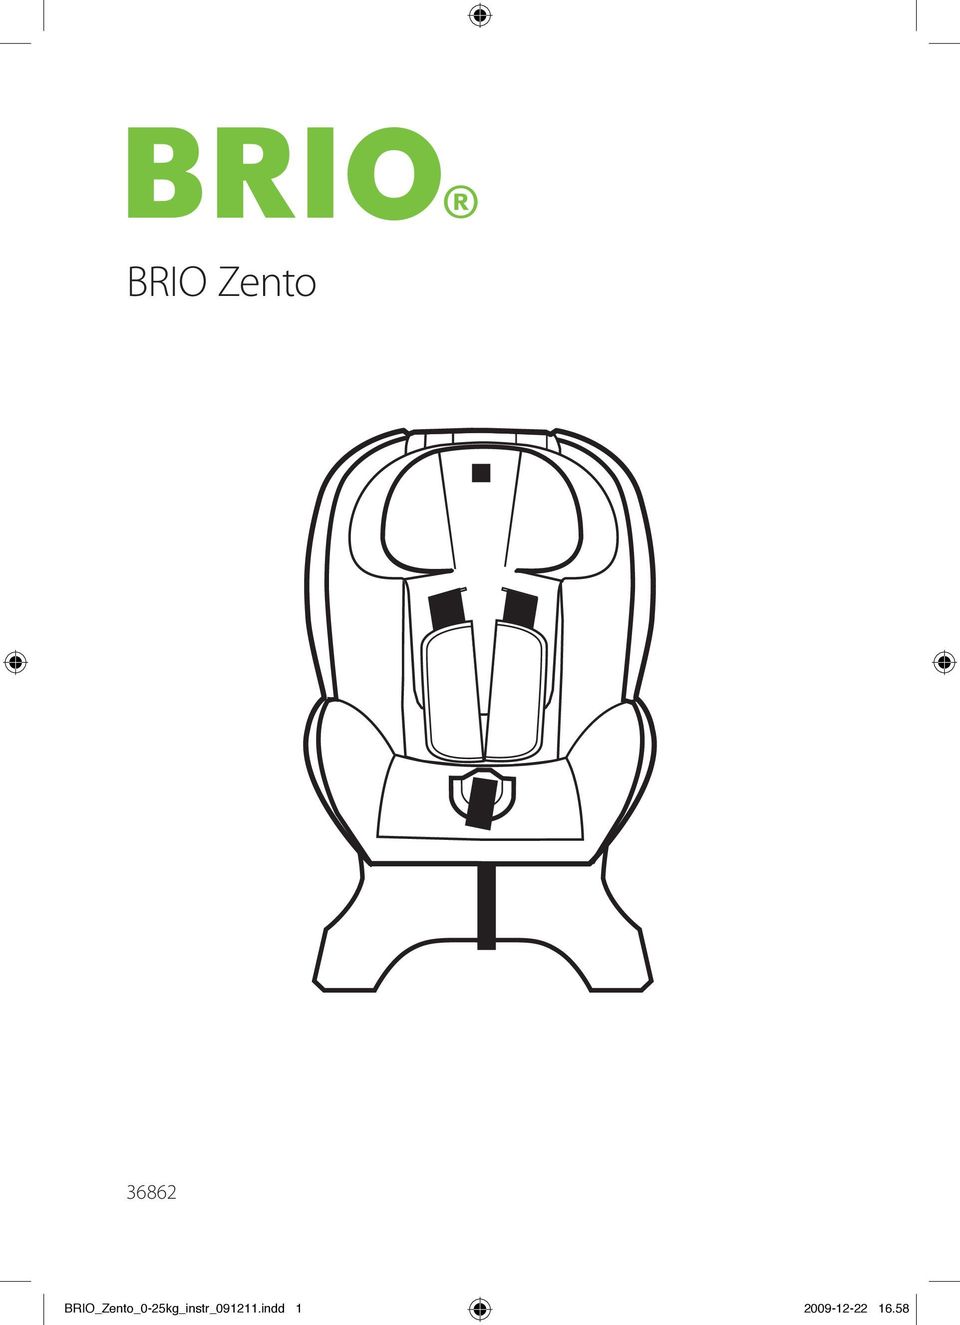 BRIO Zento. BRIO_Zento_0-25kg_instr_ indd - PDF Free Download